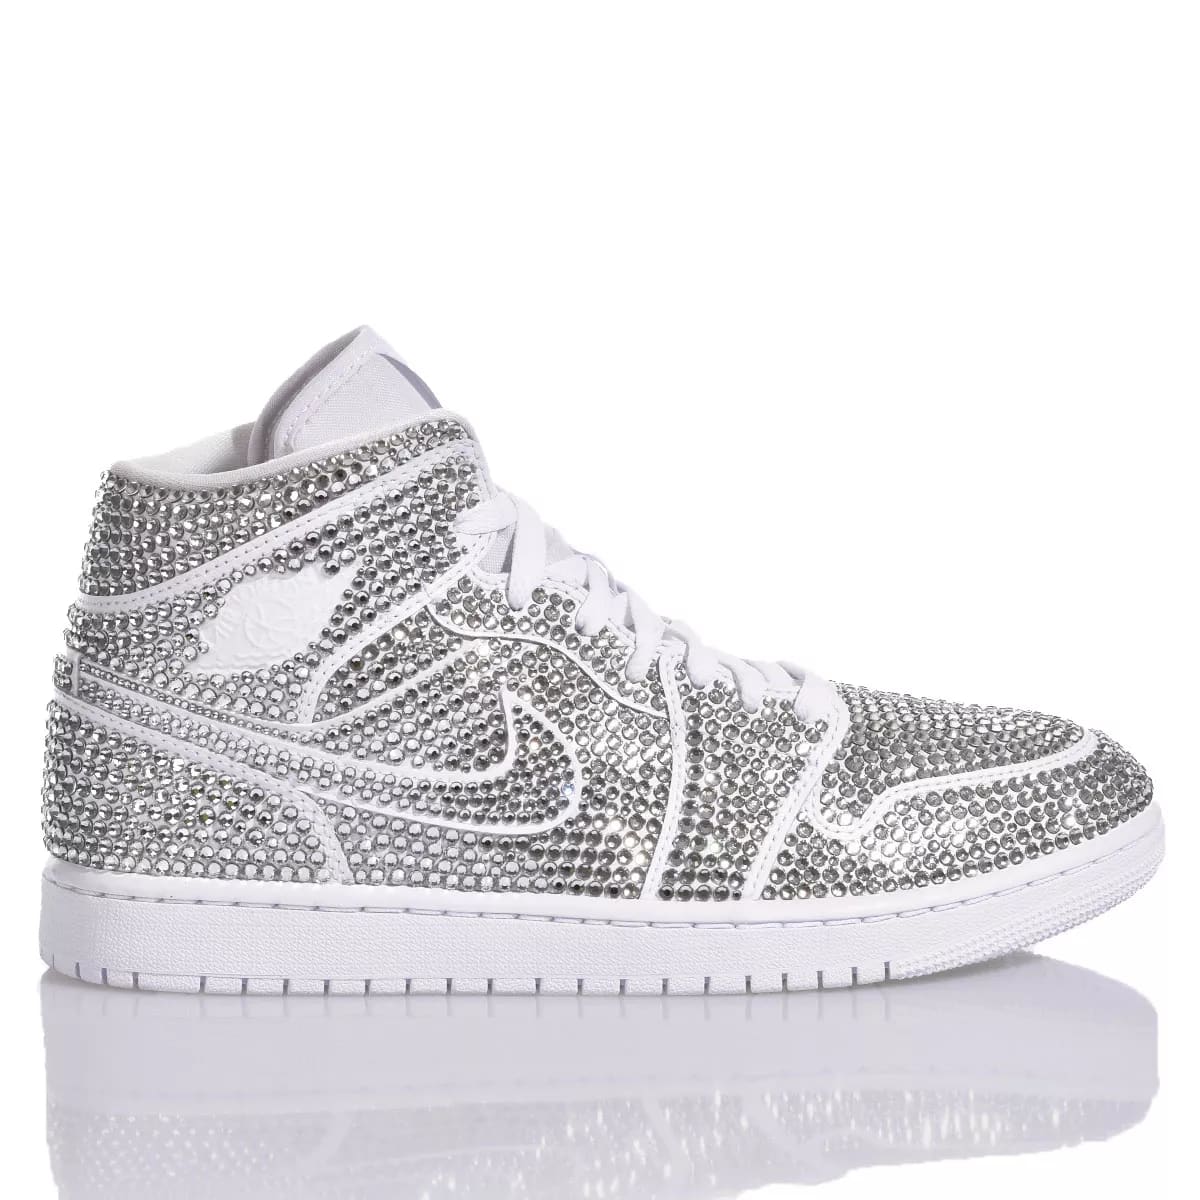 Shop Mimanera Nike Air Jordan 1 Luxury Crystal Custom